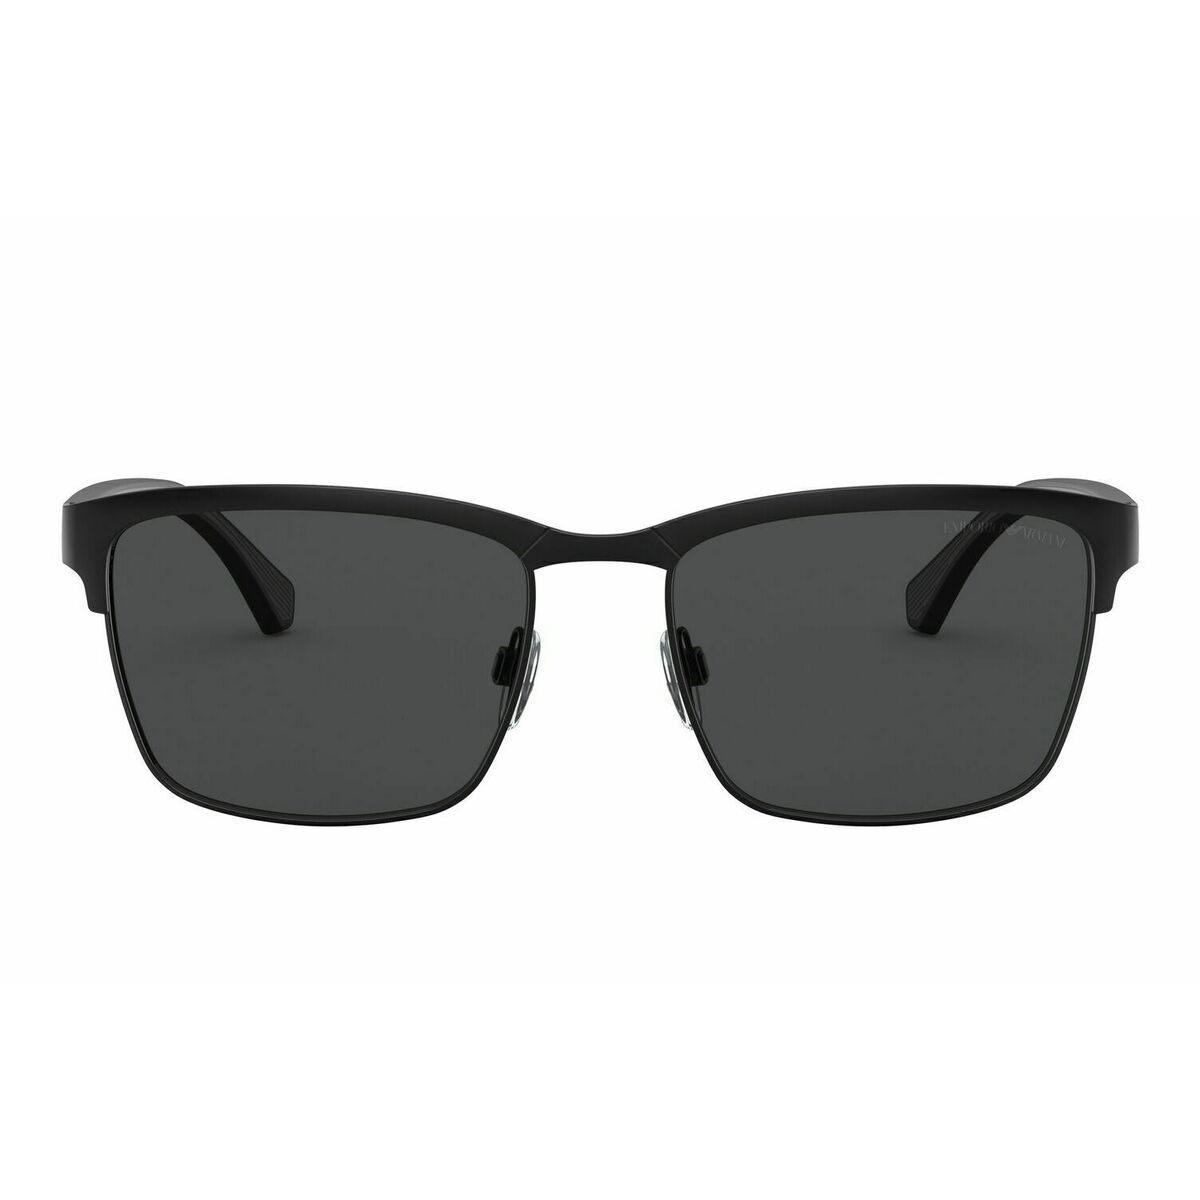 EA2087 Square Sunglasses 301487 - size 56